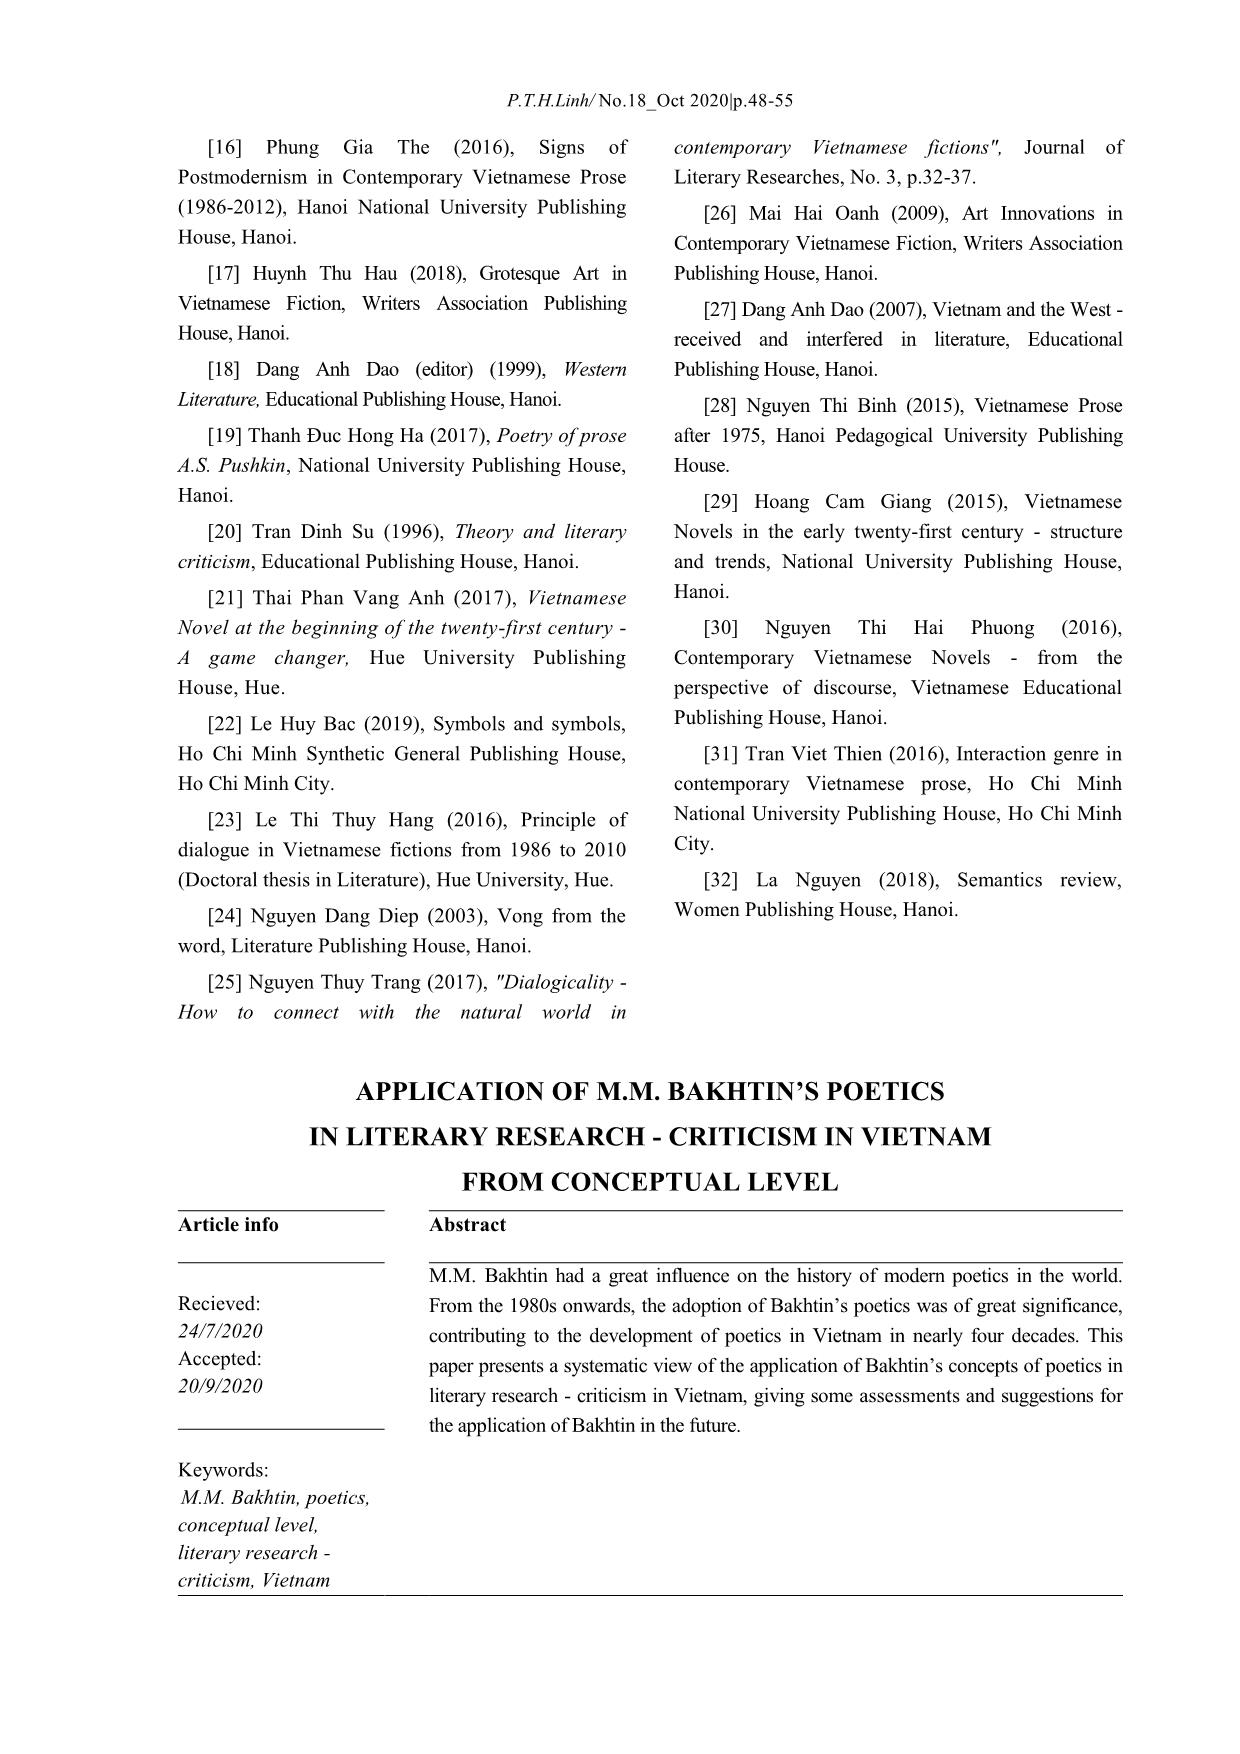 Ứng dụng thi pháp học của M. M. Bakhtin trong nghiên cứu – phê bình văn học ở Việt Nam từ cấp độ khái niệm trang 8